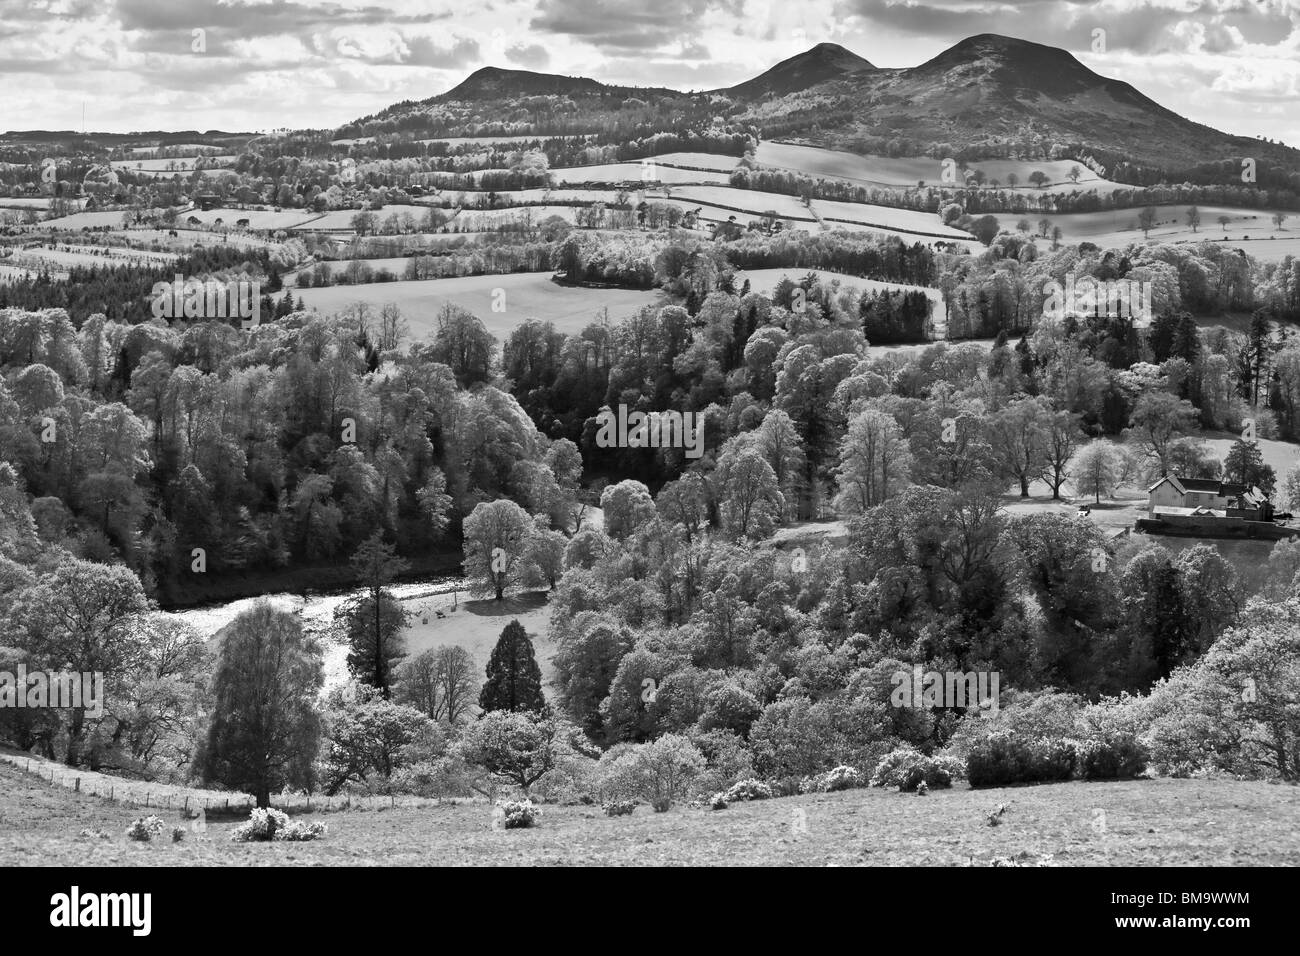 Die Eildon Hills in der schottischen Grenzen UK im Frühling - Scotts View das Tweed-Tal und die Hügel - Infrarot b&w Stockfoto